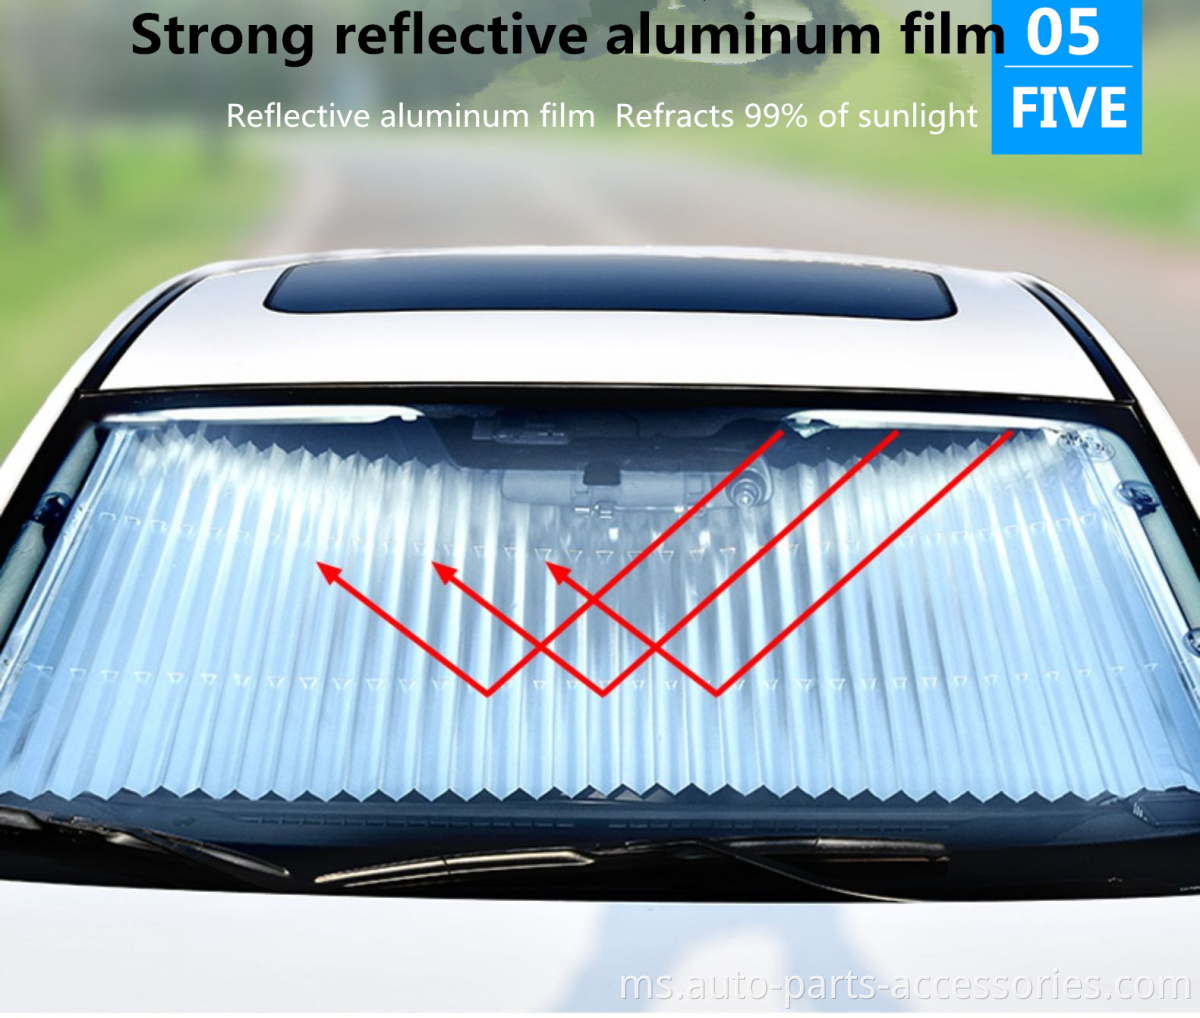 Bukti SUV UV yang paling popular ditarik balik aluminium sejagat